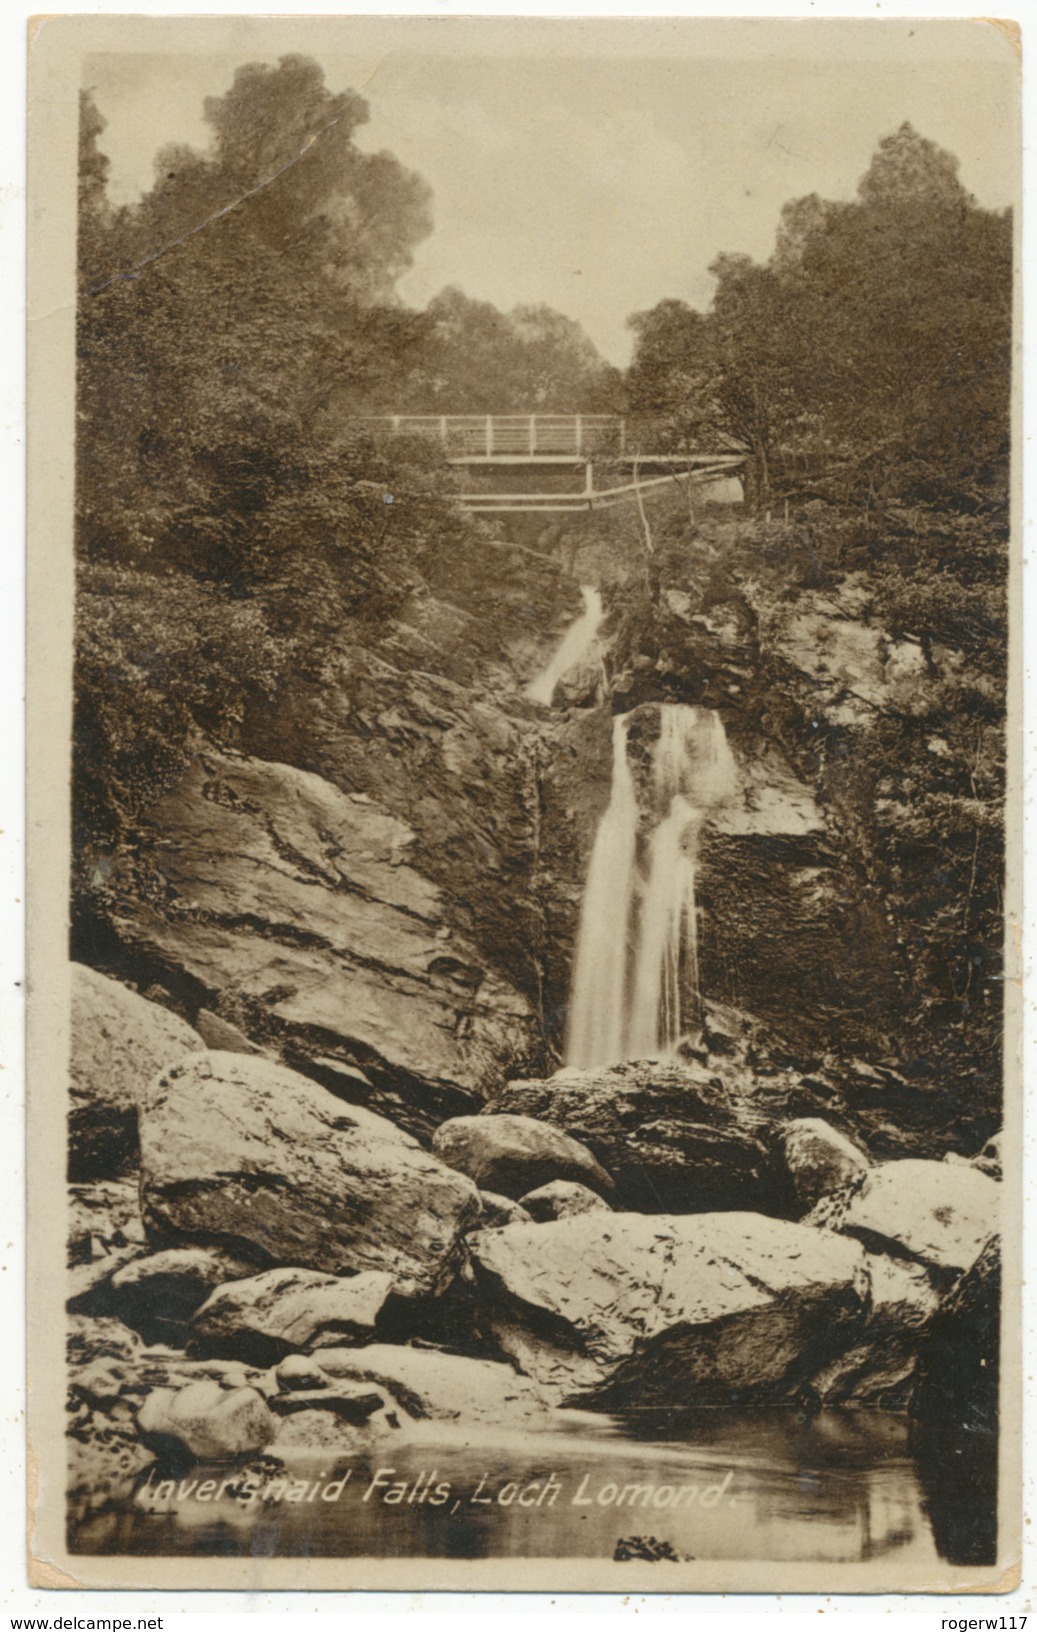 Inversnaid Falls, Loch Lomond, 1914 Postcard - Dunbartonshire